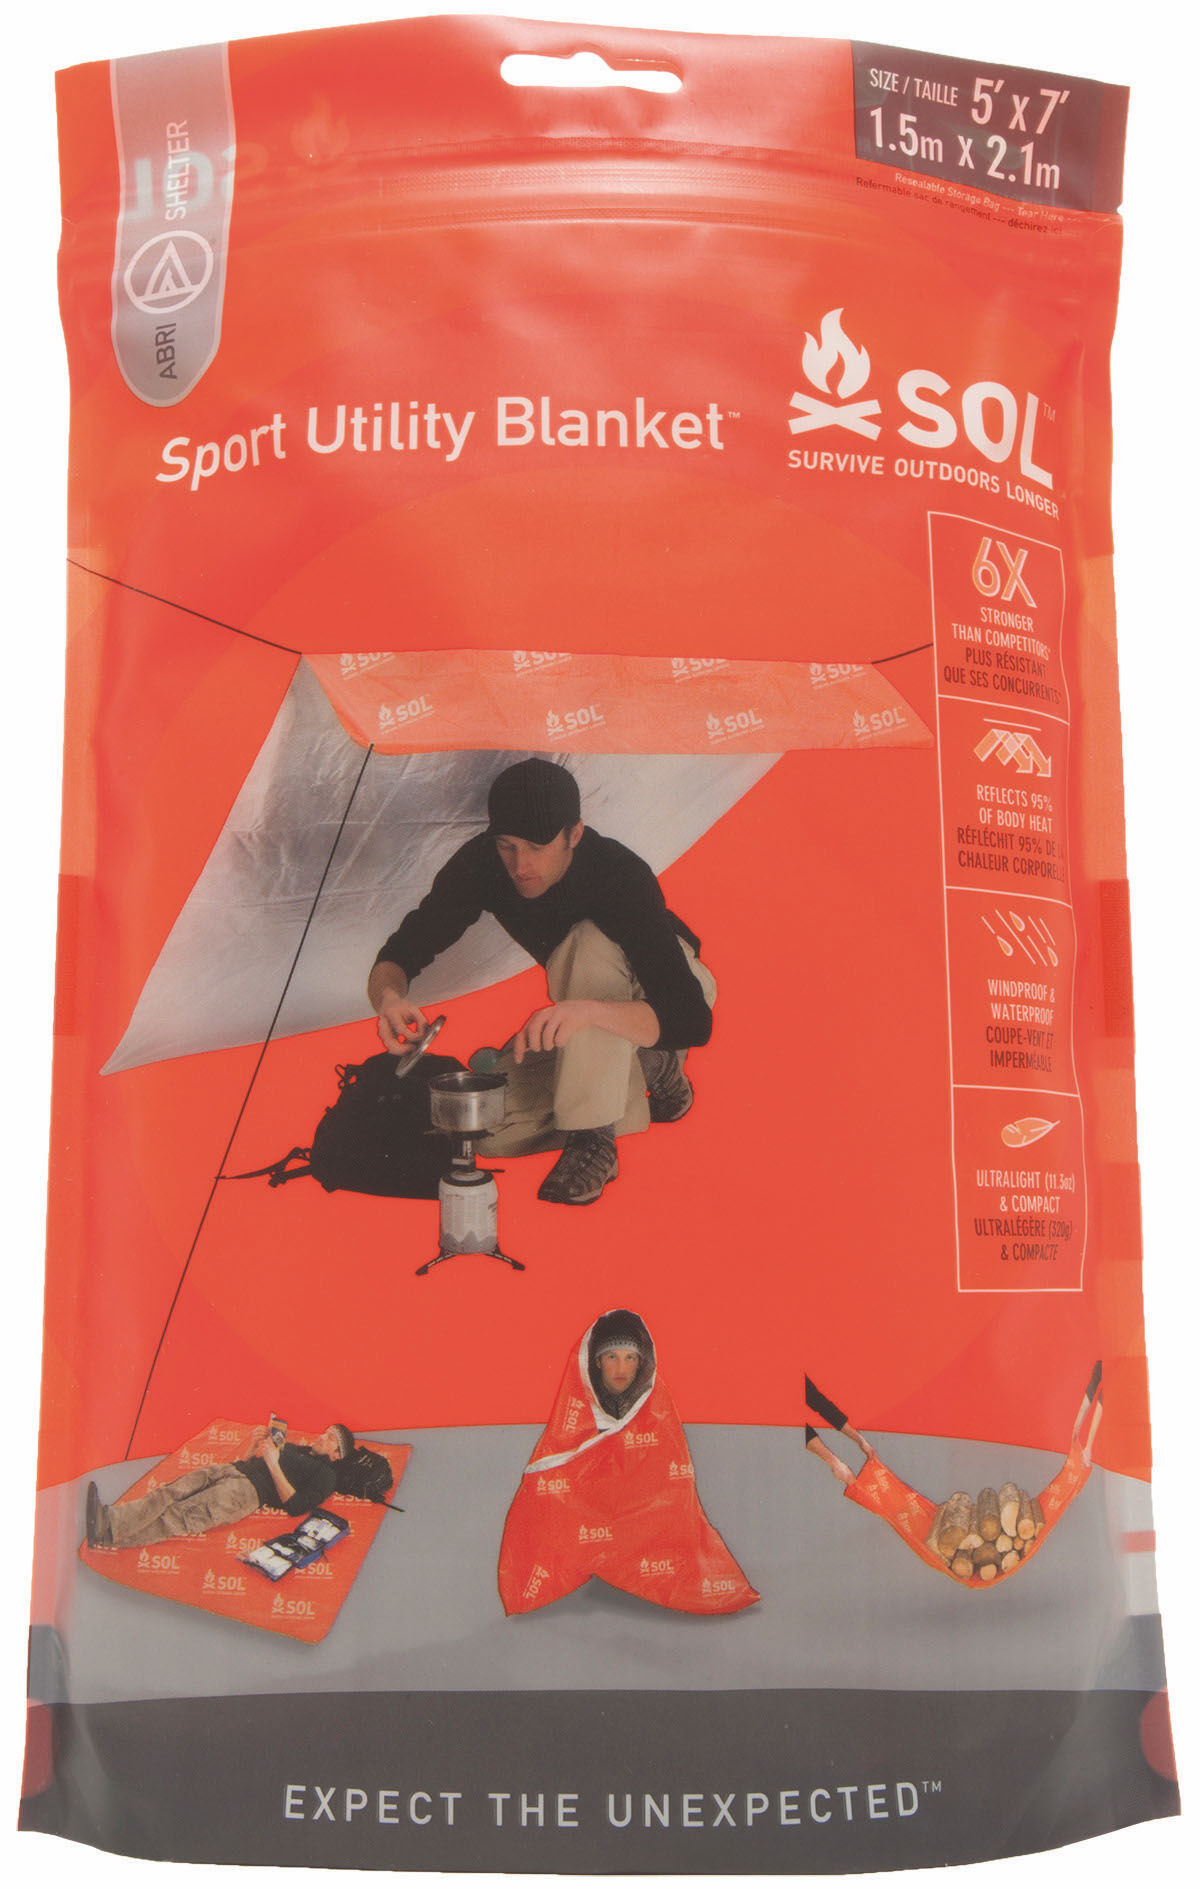 Sol Sport Utility Blanket - Rettungsdecke